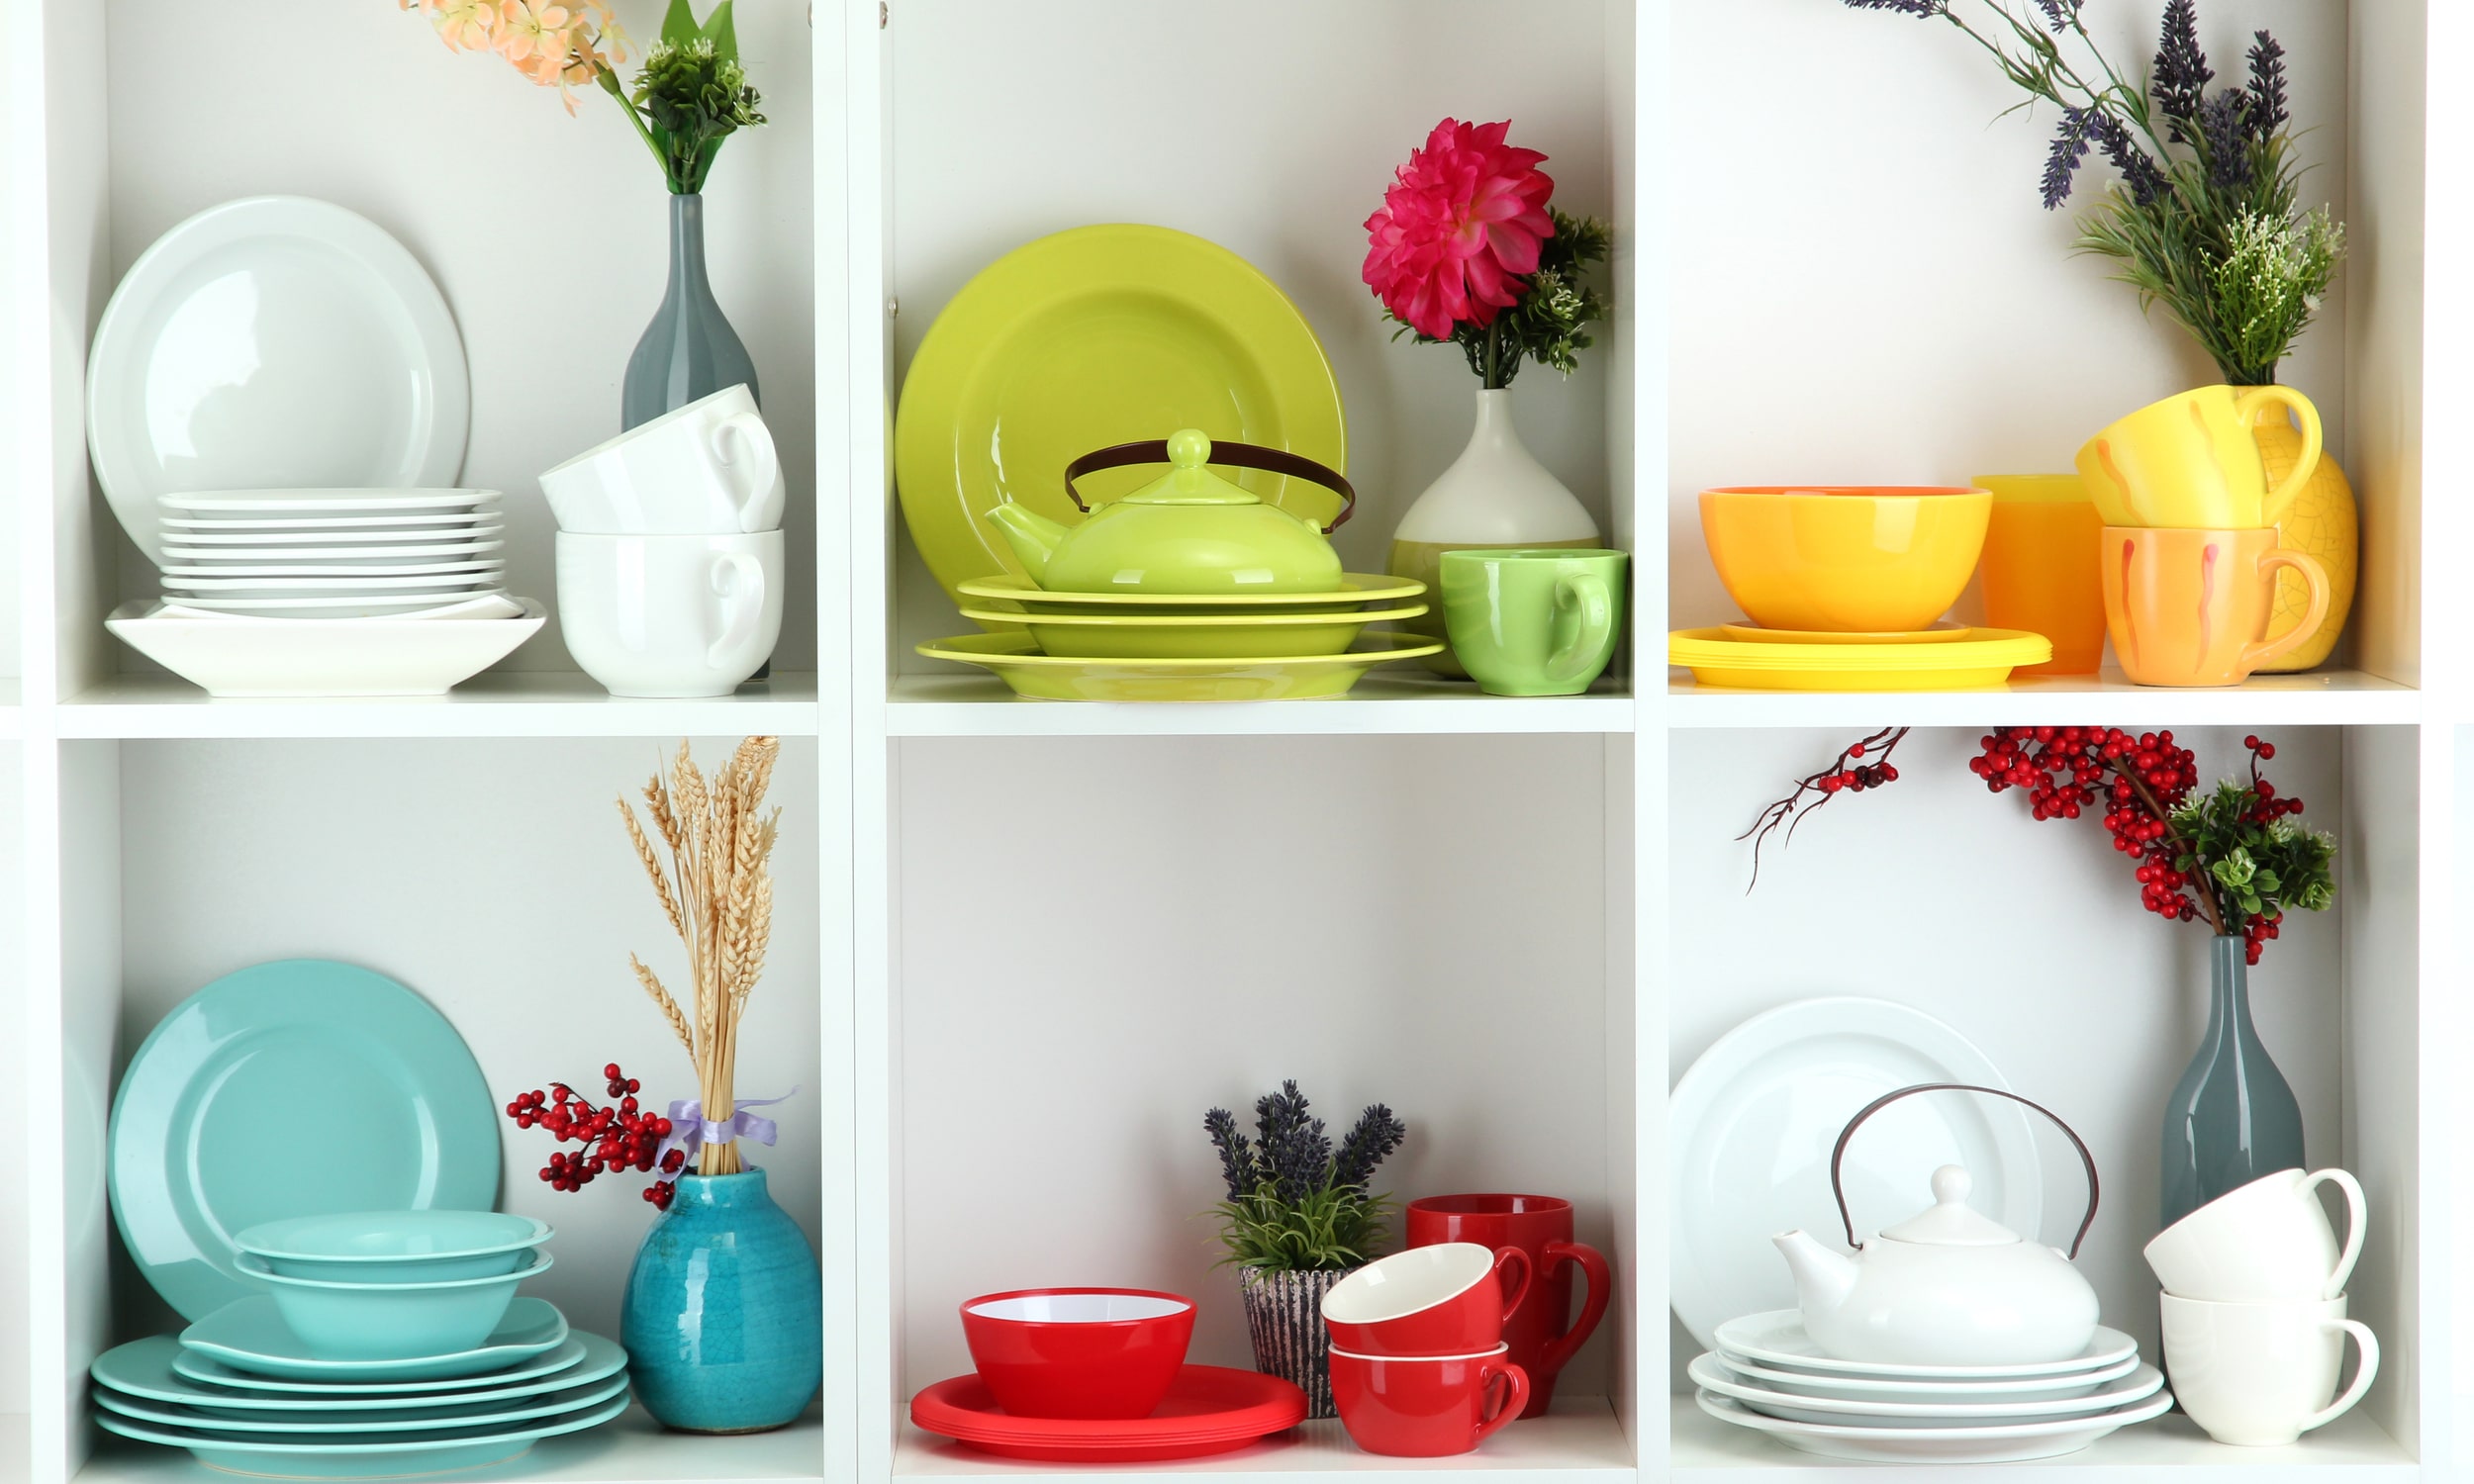 разноцветная посуда в кухонном помещении